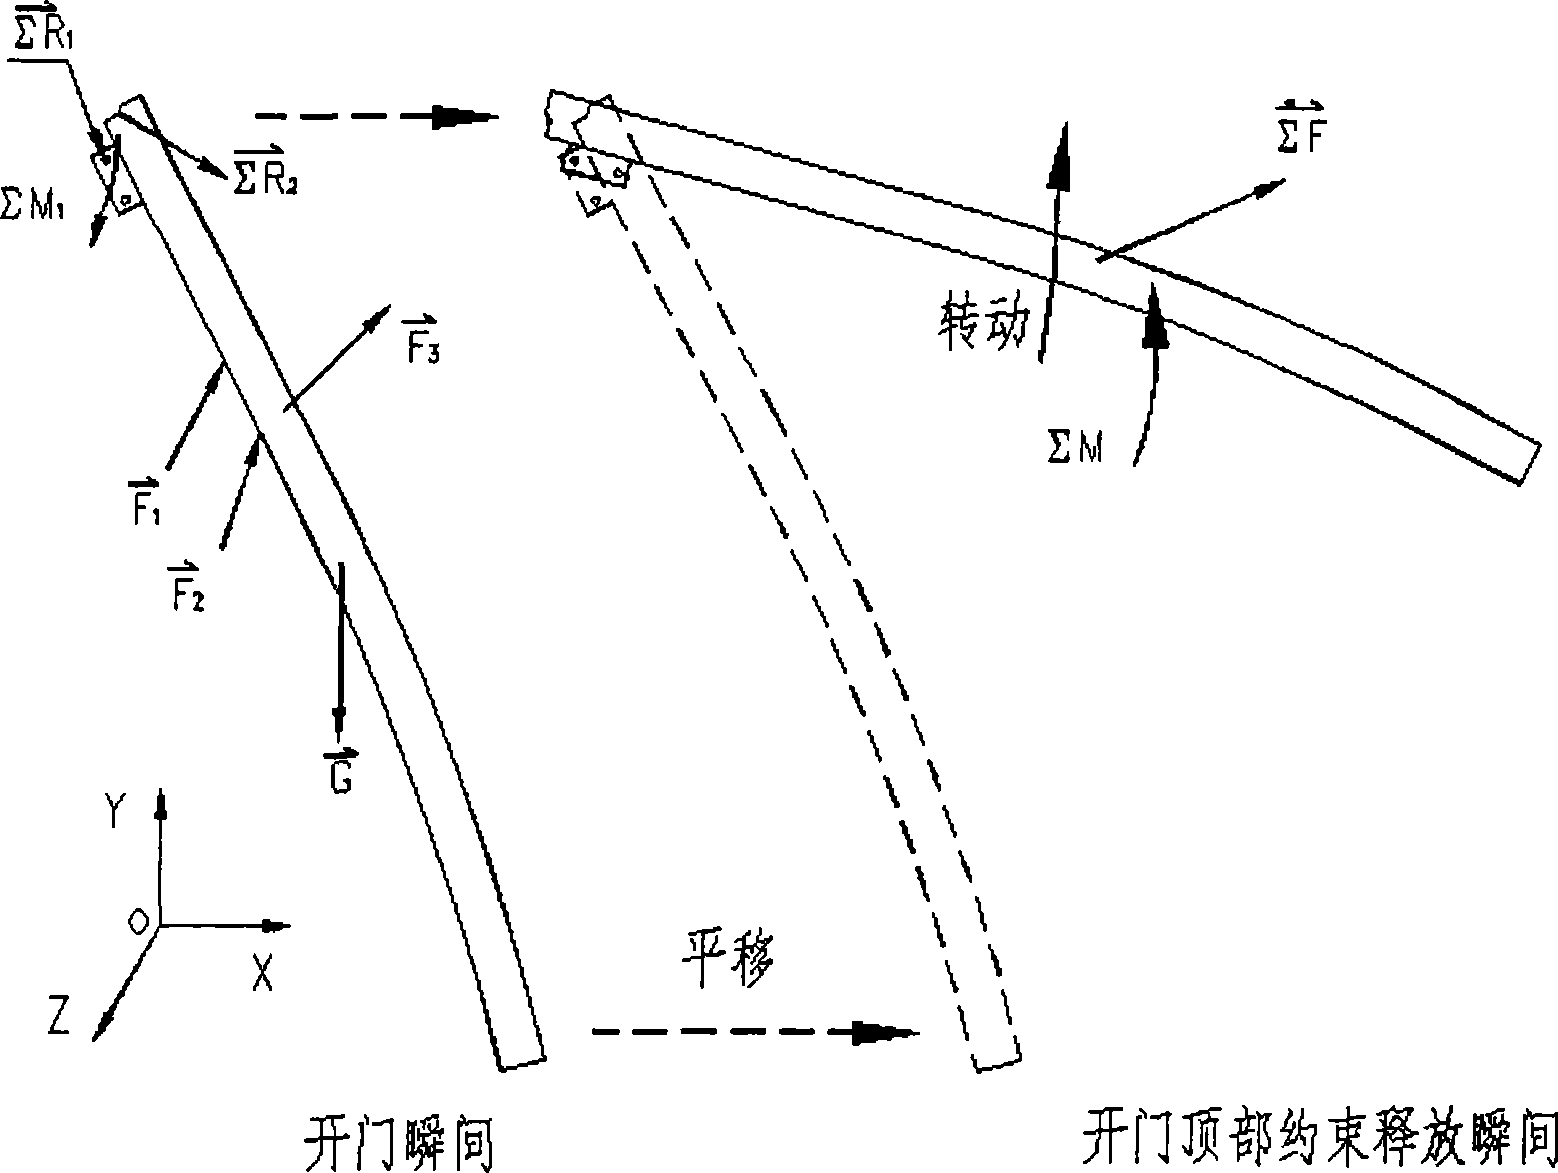 Multibar bearing and motion guiding mechanism of tilt-up door